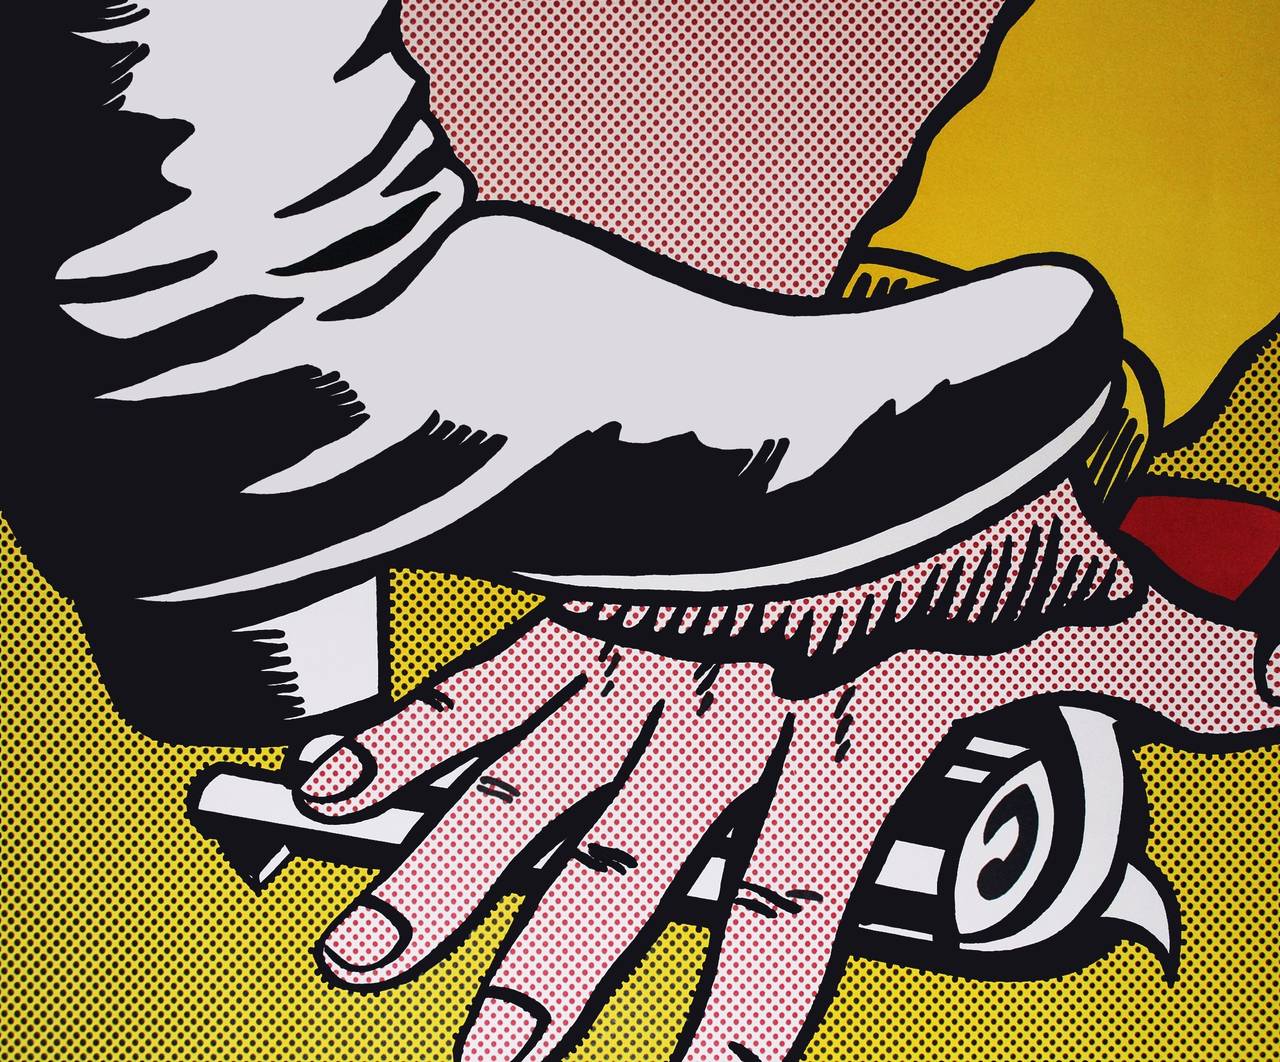 Foot and Hand - Print by Roy Lichtenstein